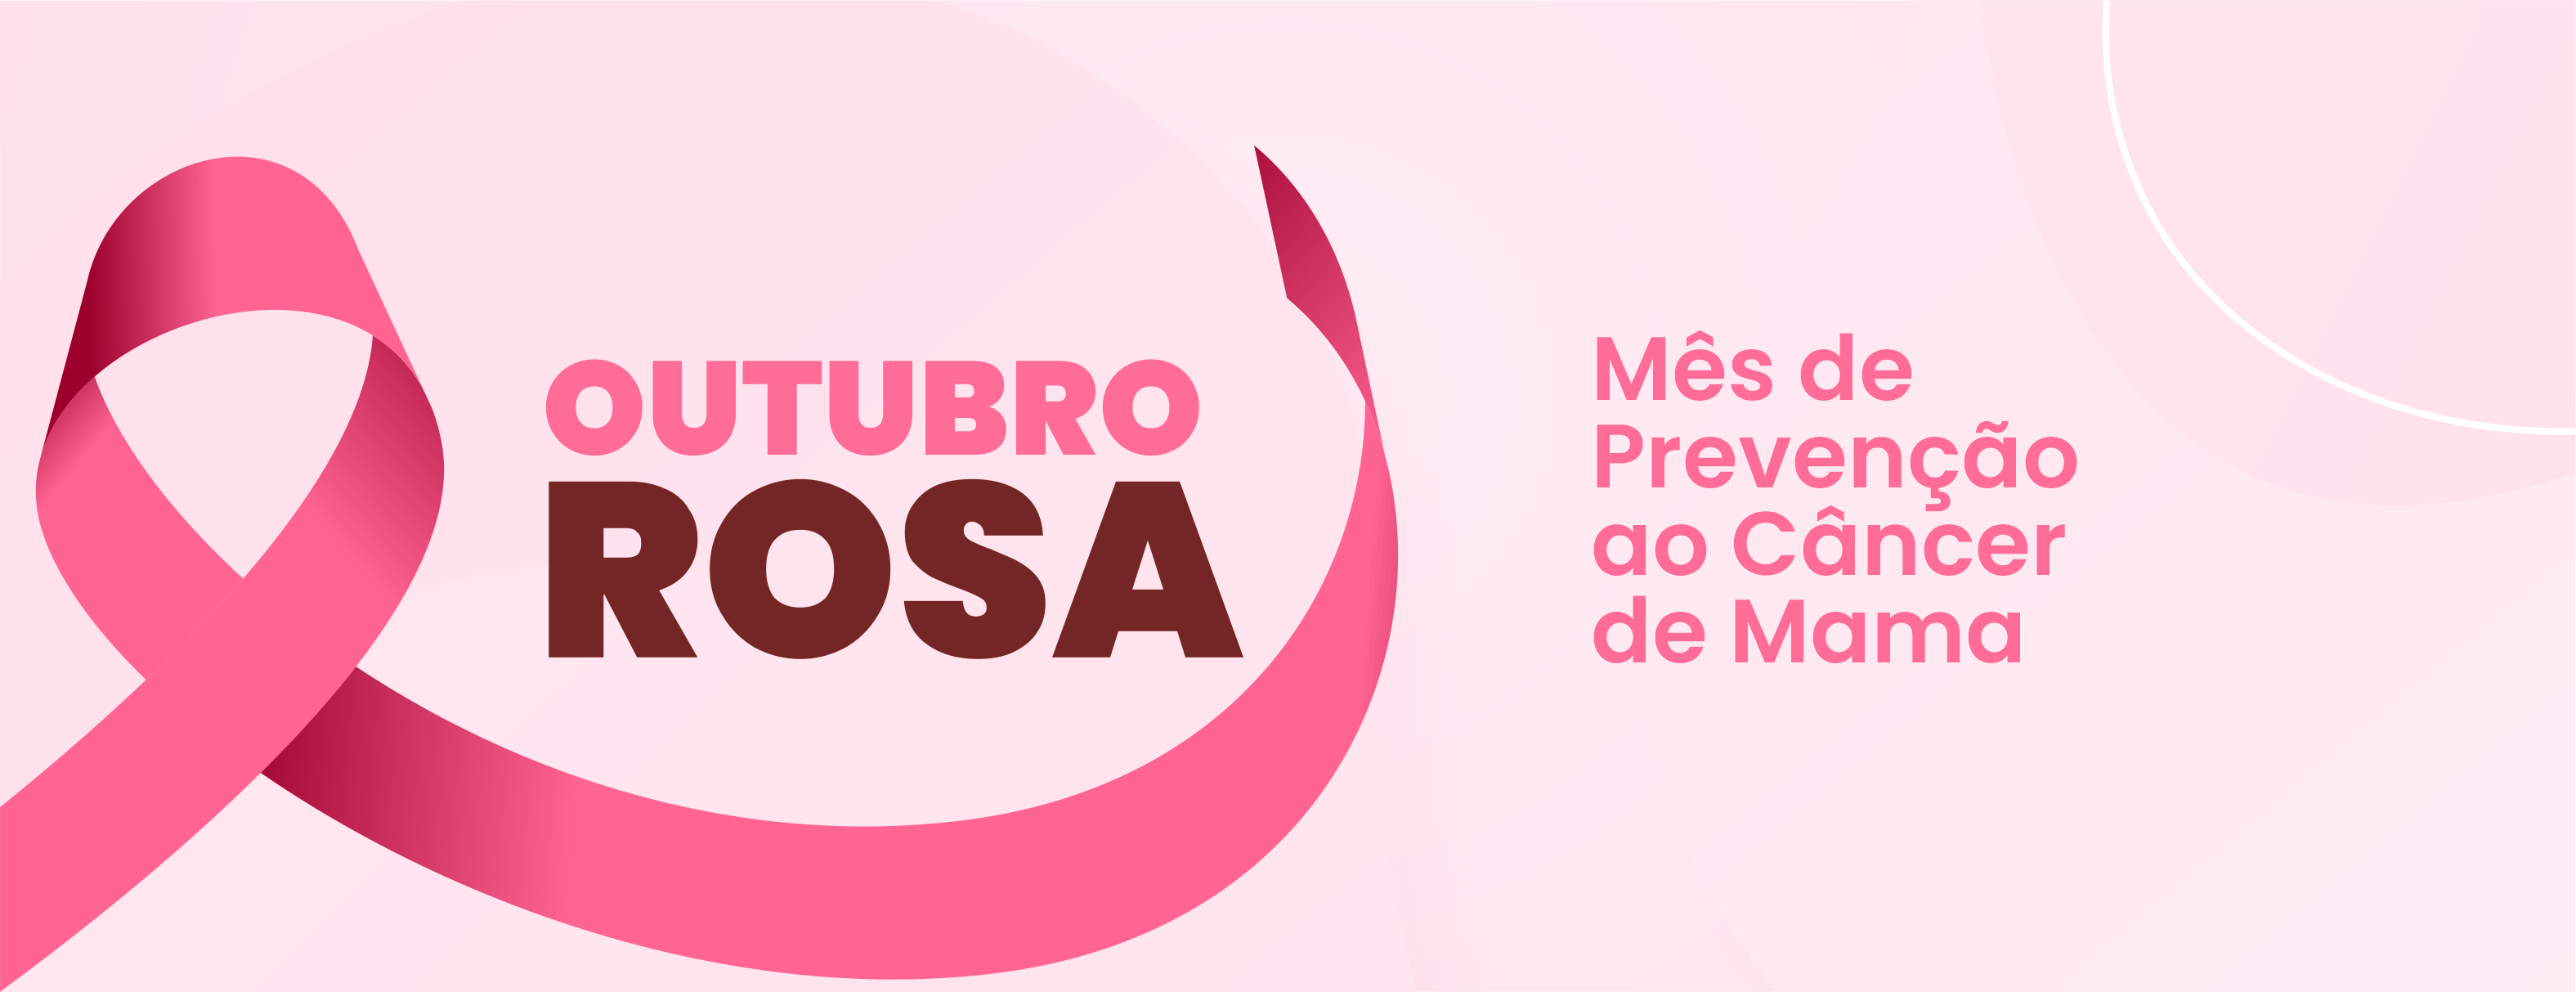 Outubro é o mês de prevenção ao Câncer de Mama